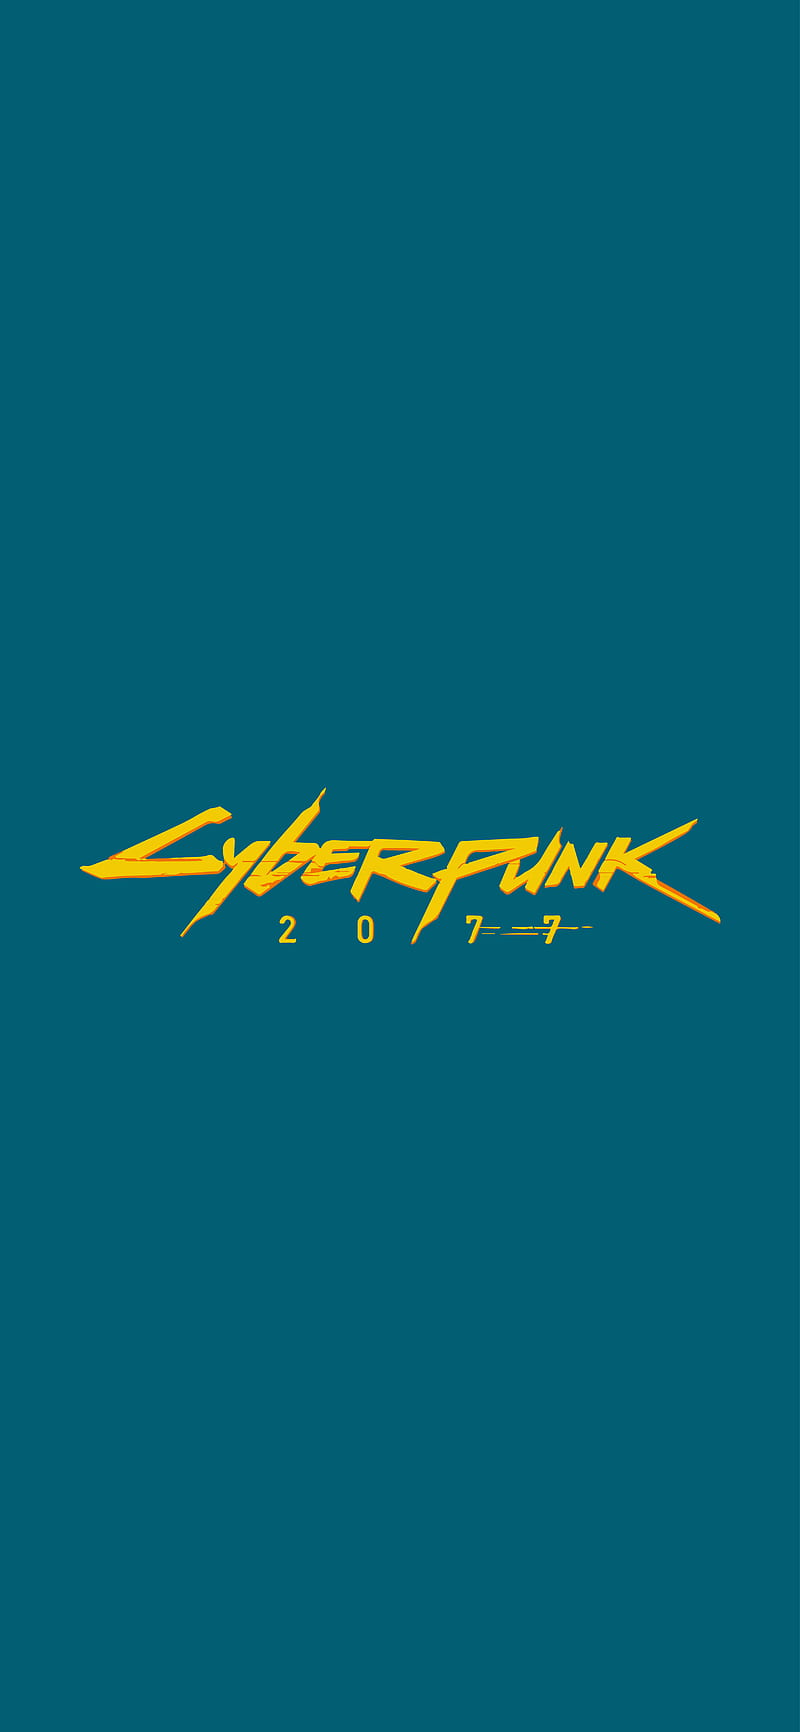 Cyberpunk Logo được biết đến là một trong những biểu tượng độc đáo và phong cách nhất trong thế giới game. Hãy để chúng tôi dẫn bạn vào một thế giới đầy sắc màu và ấn tượng của biểu tượng này. Hình ảnh của chúng tôi chắc chắn sẽ đem lại cho bạn những cảm xúc tuyệt vời!